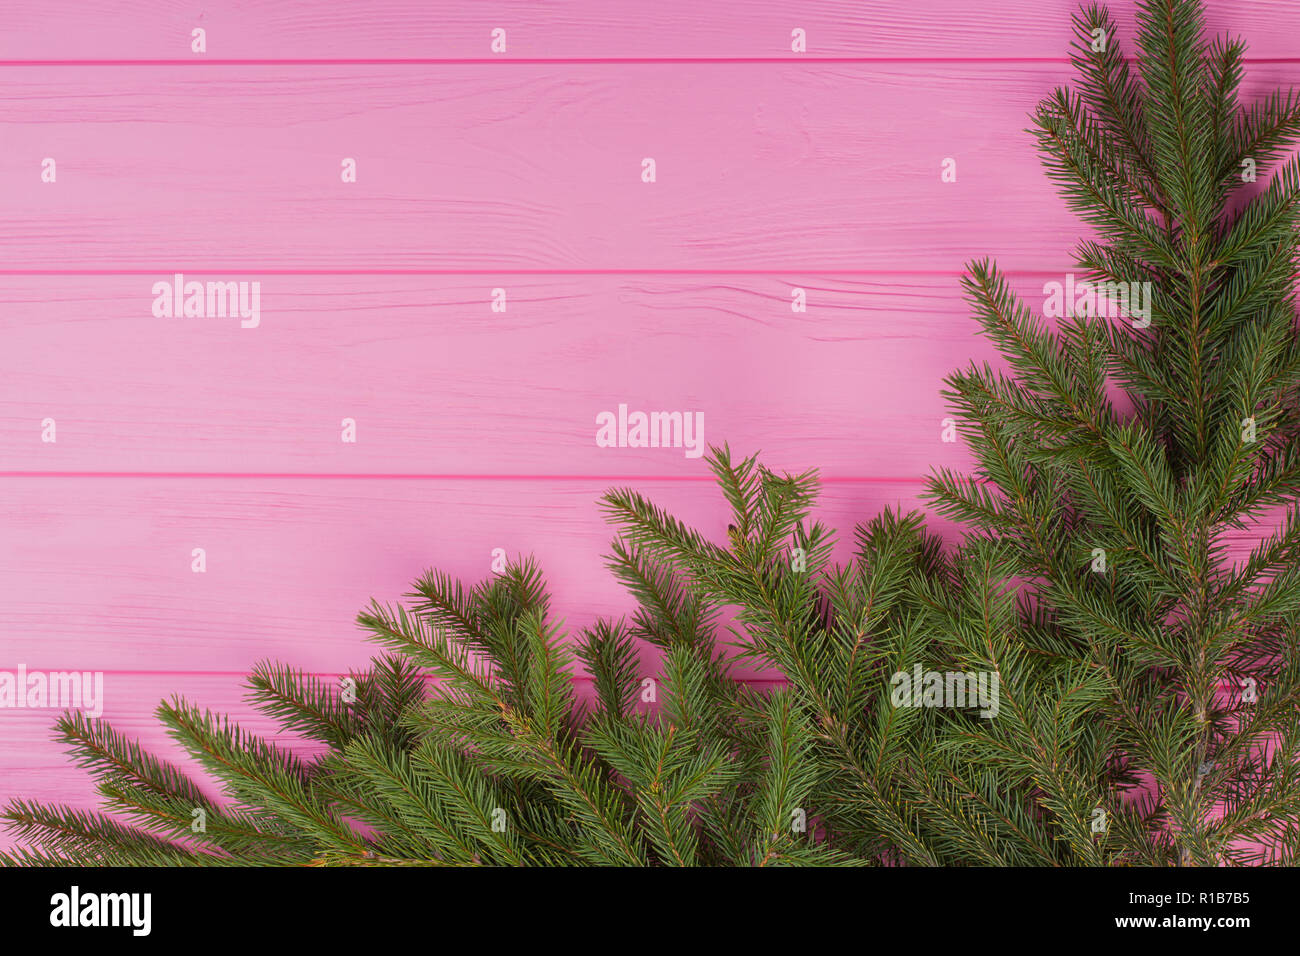 Fond de bois de sapin de Noël avec des branches. Banque D'Images